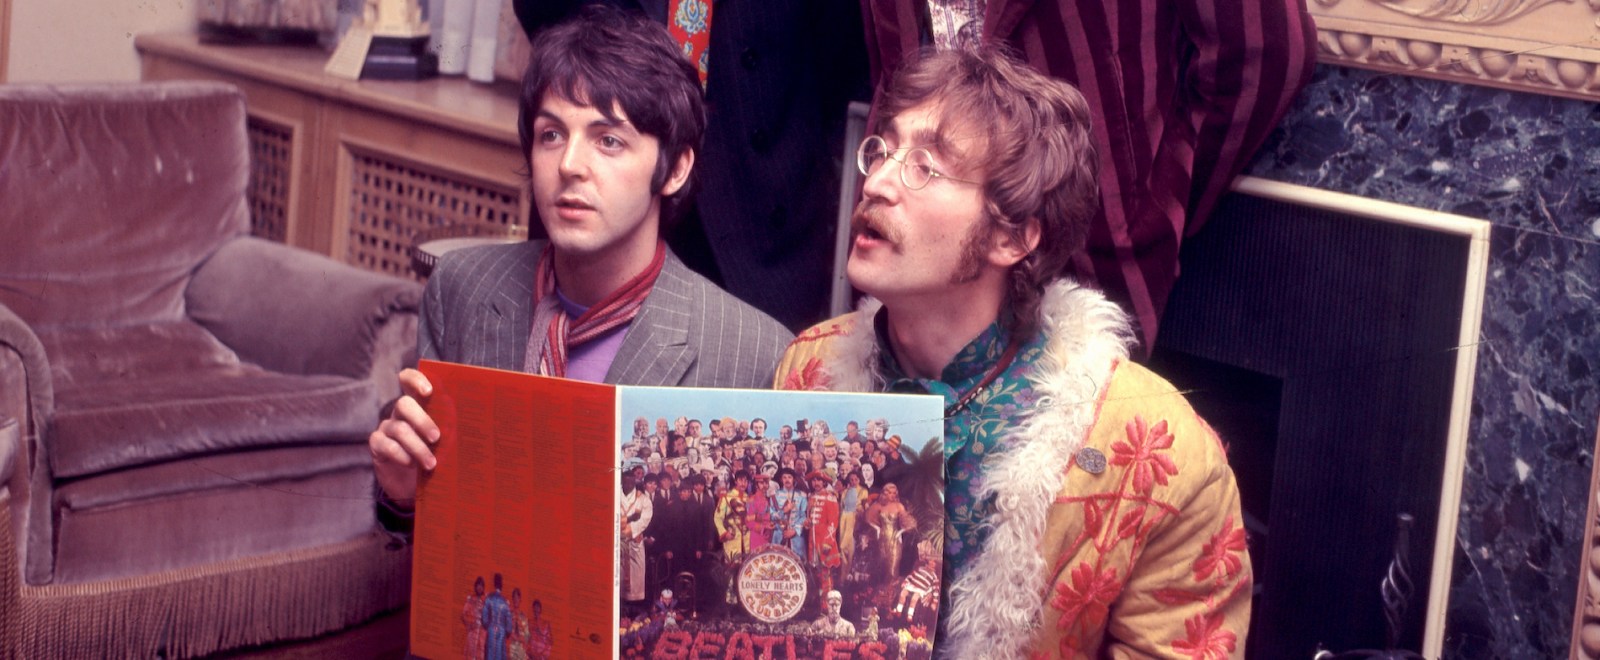 Paul McCartney John Lennon The Beatles 1967